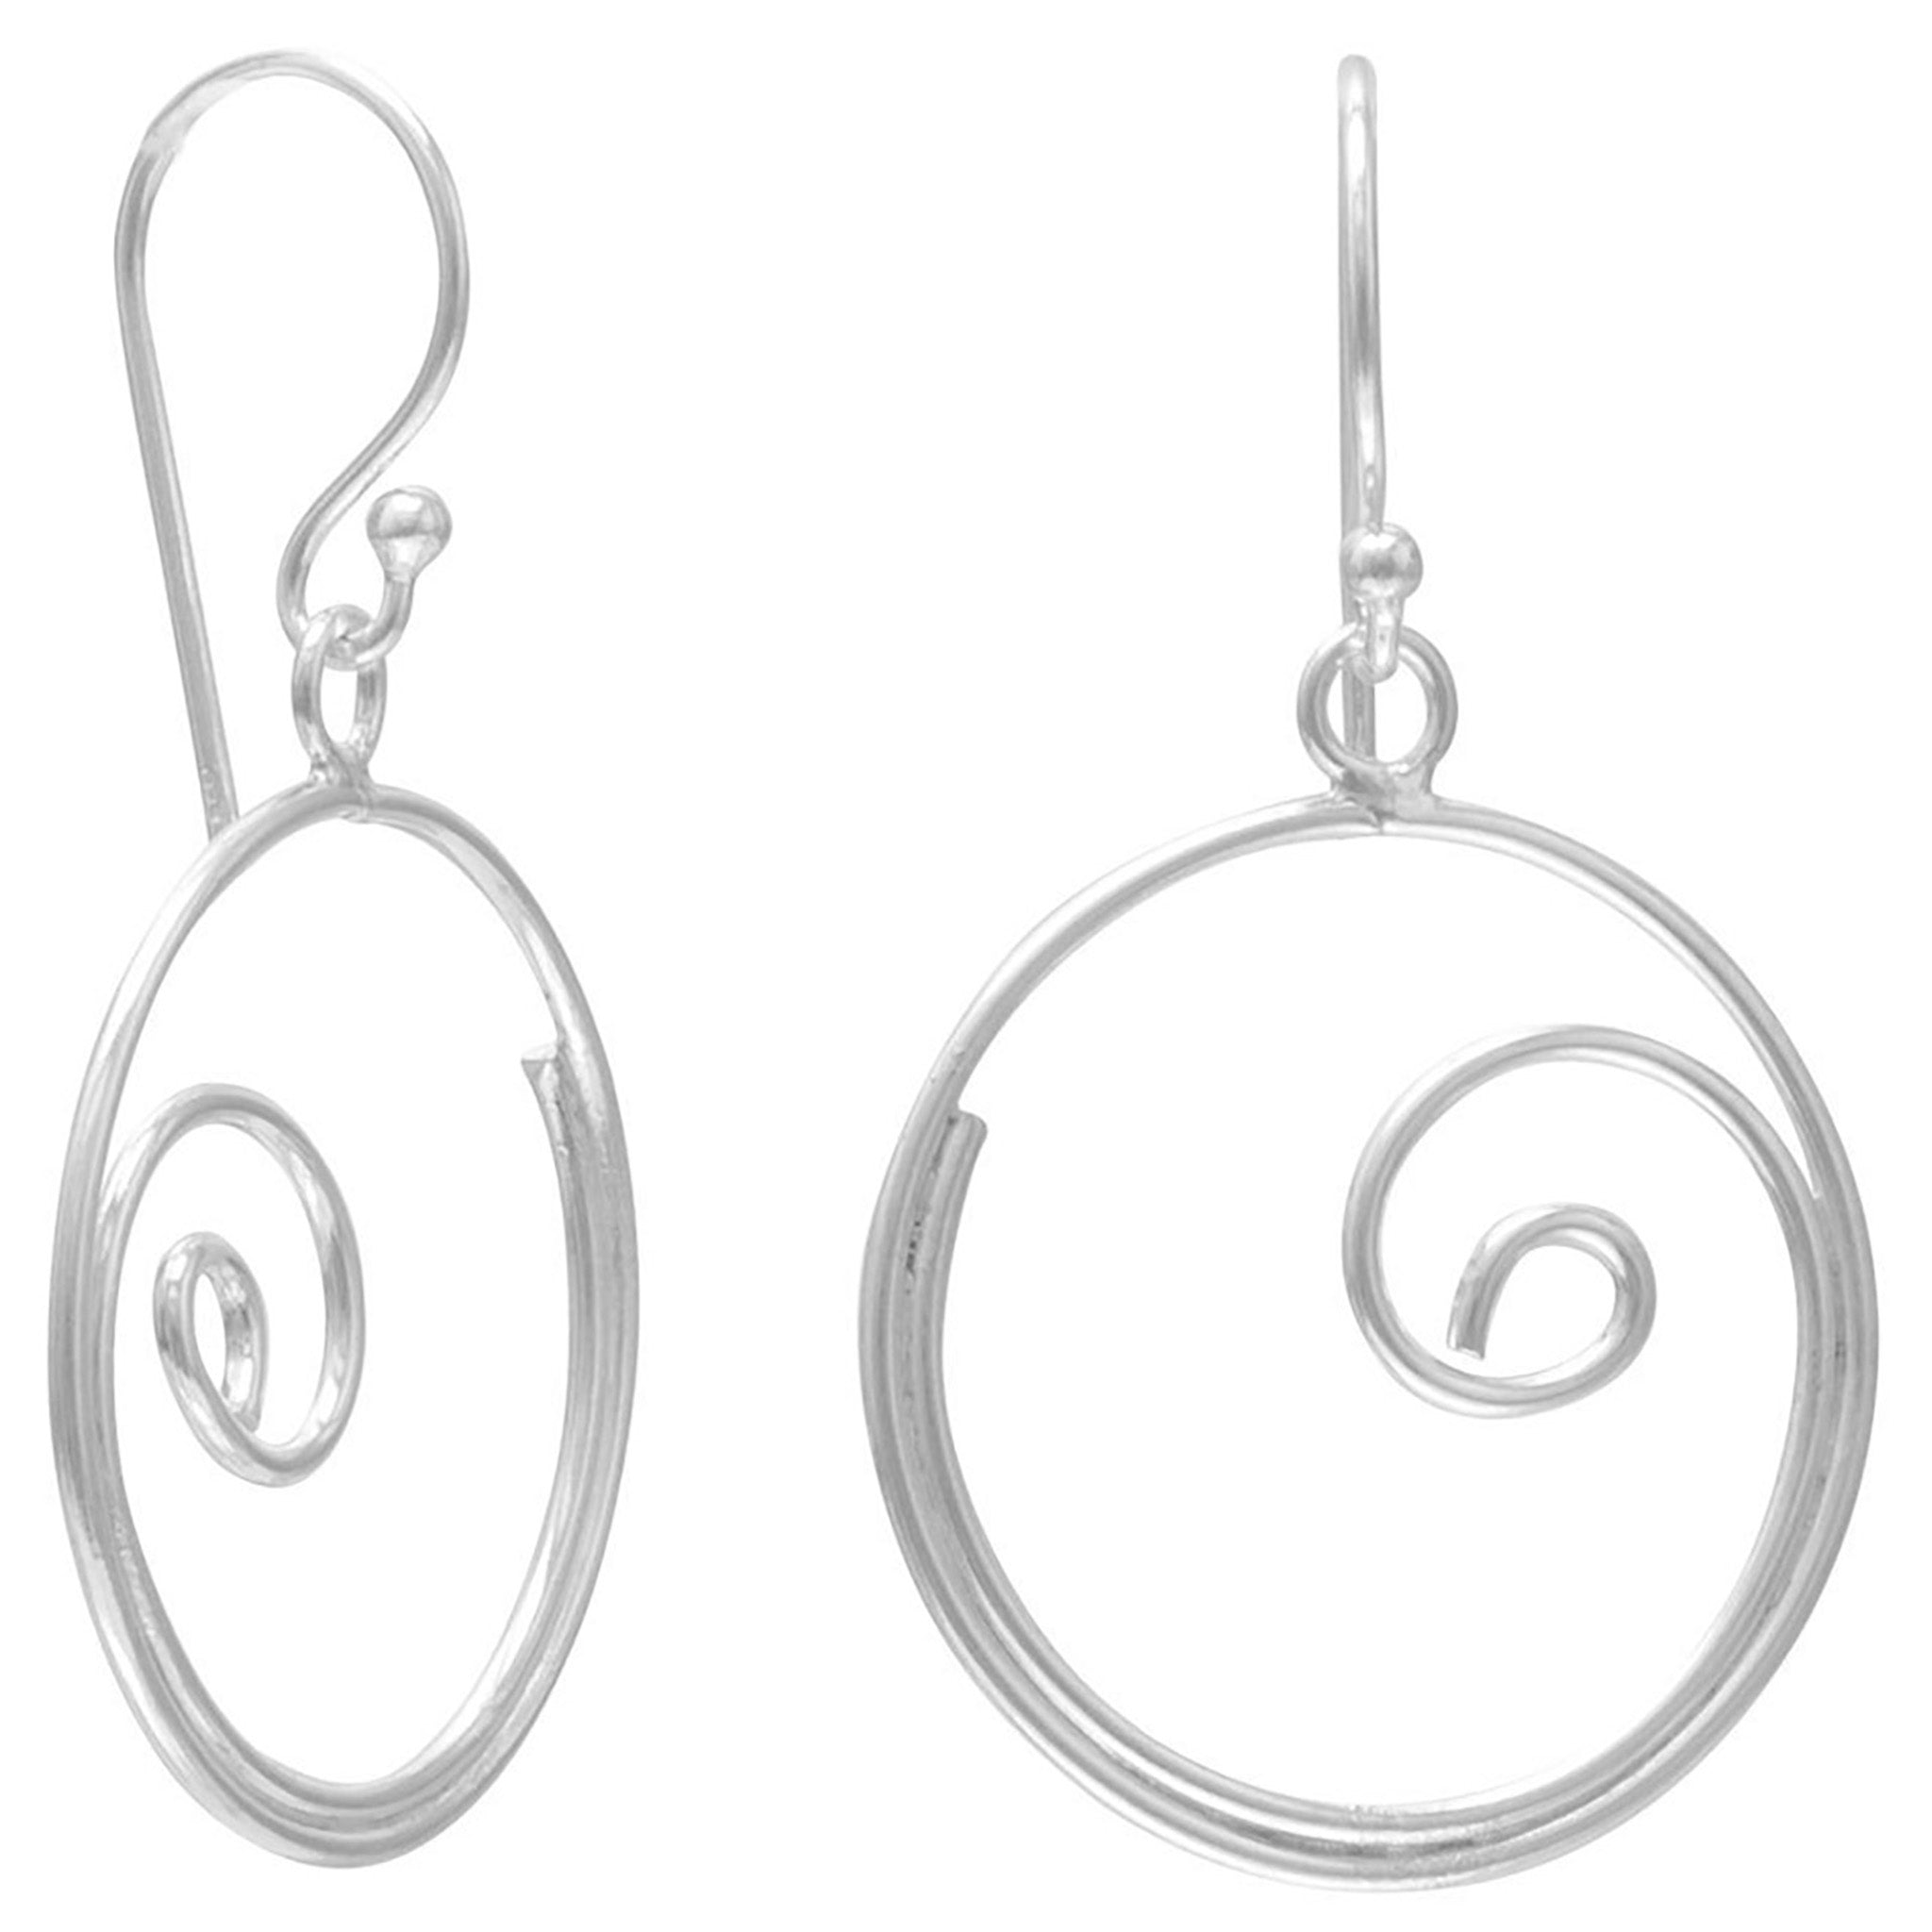 Swirl Design Wire Earrings